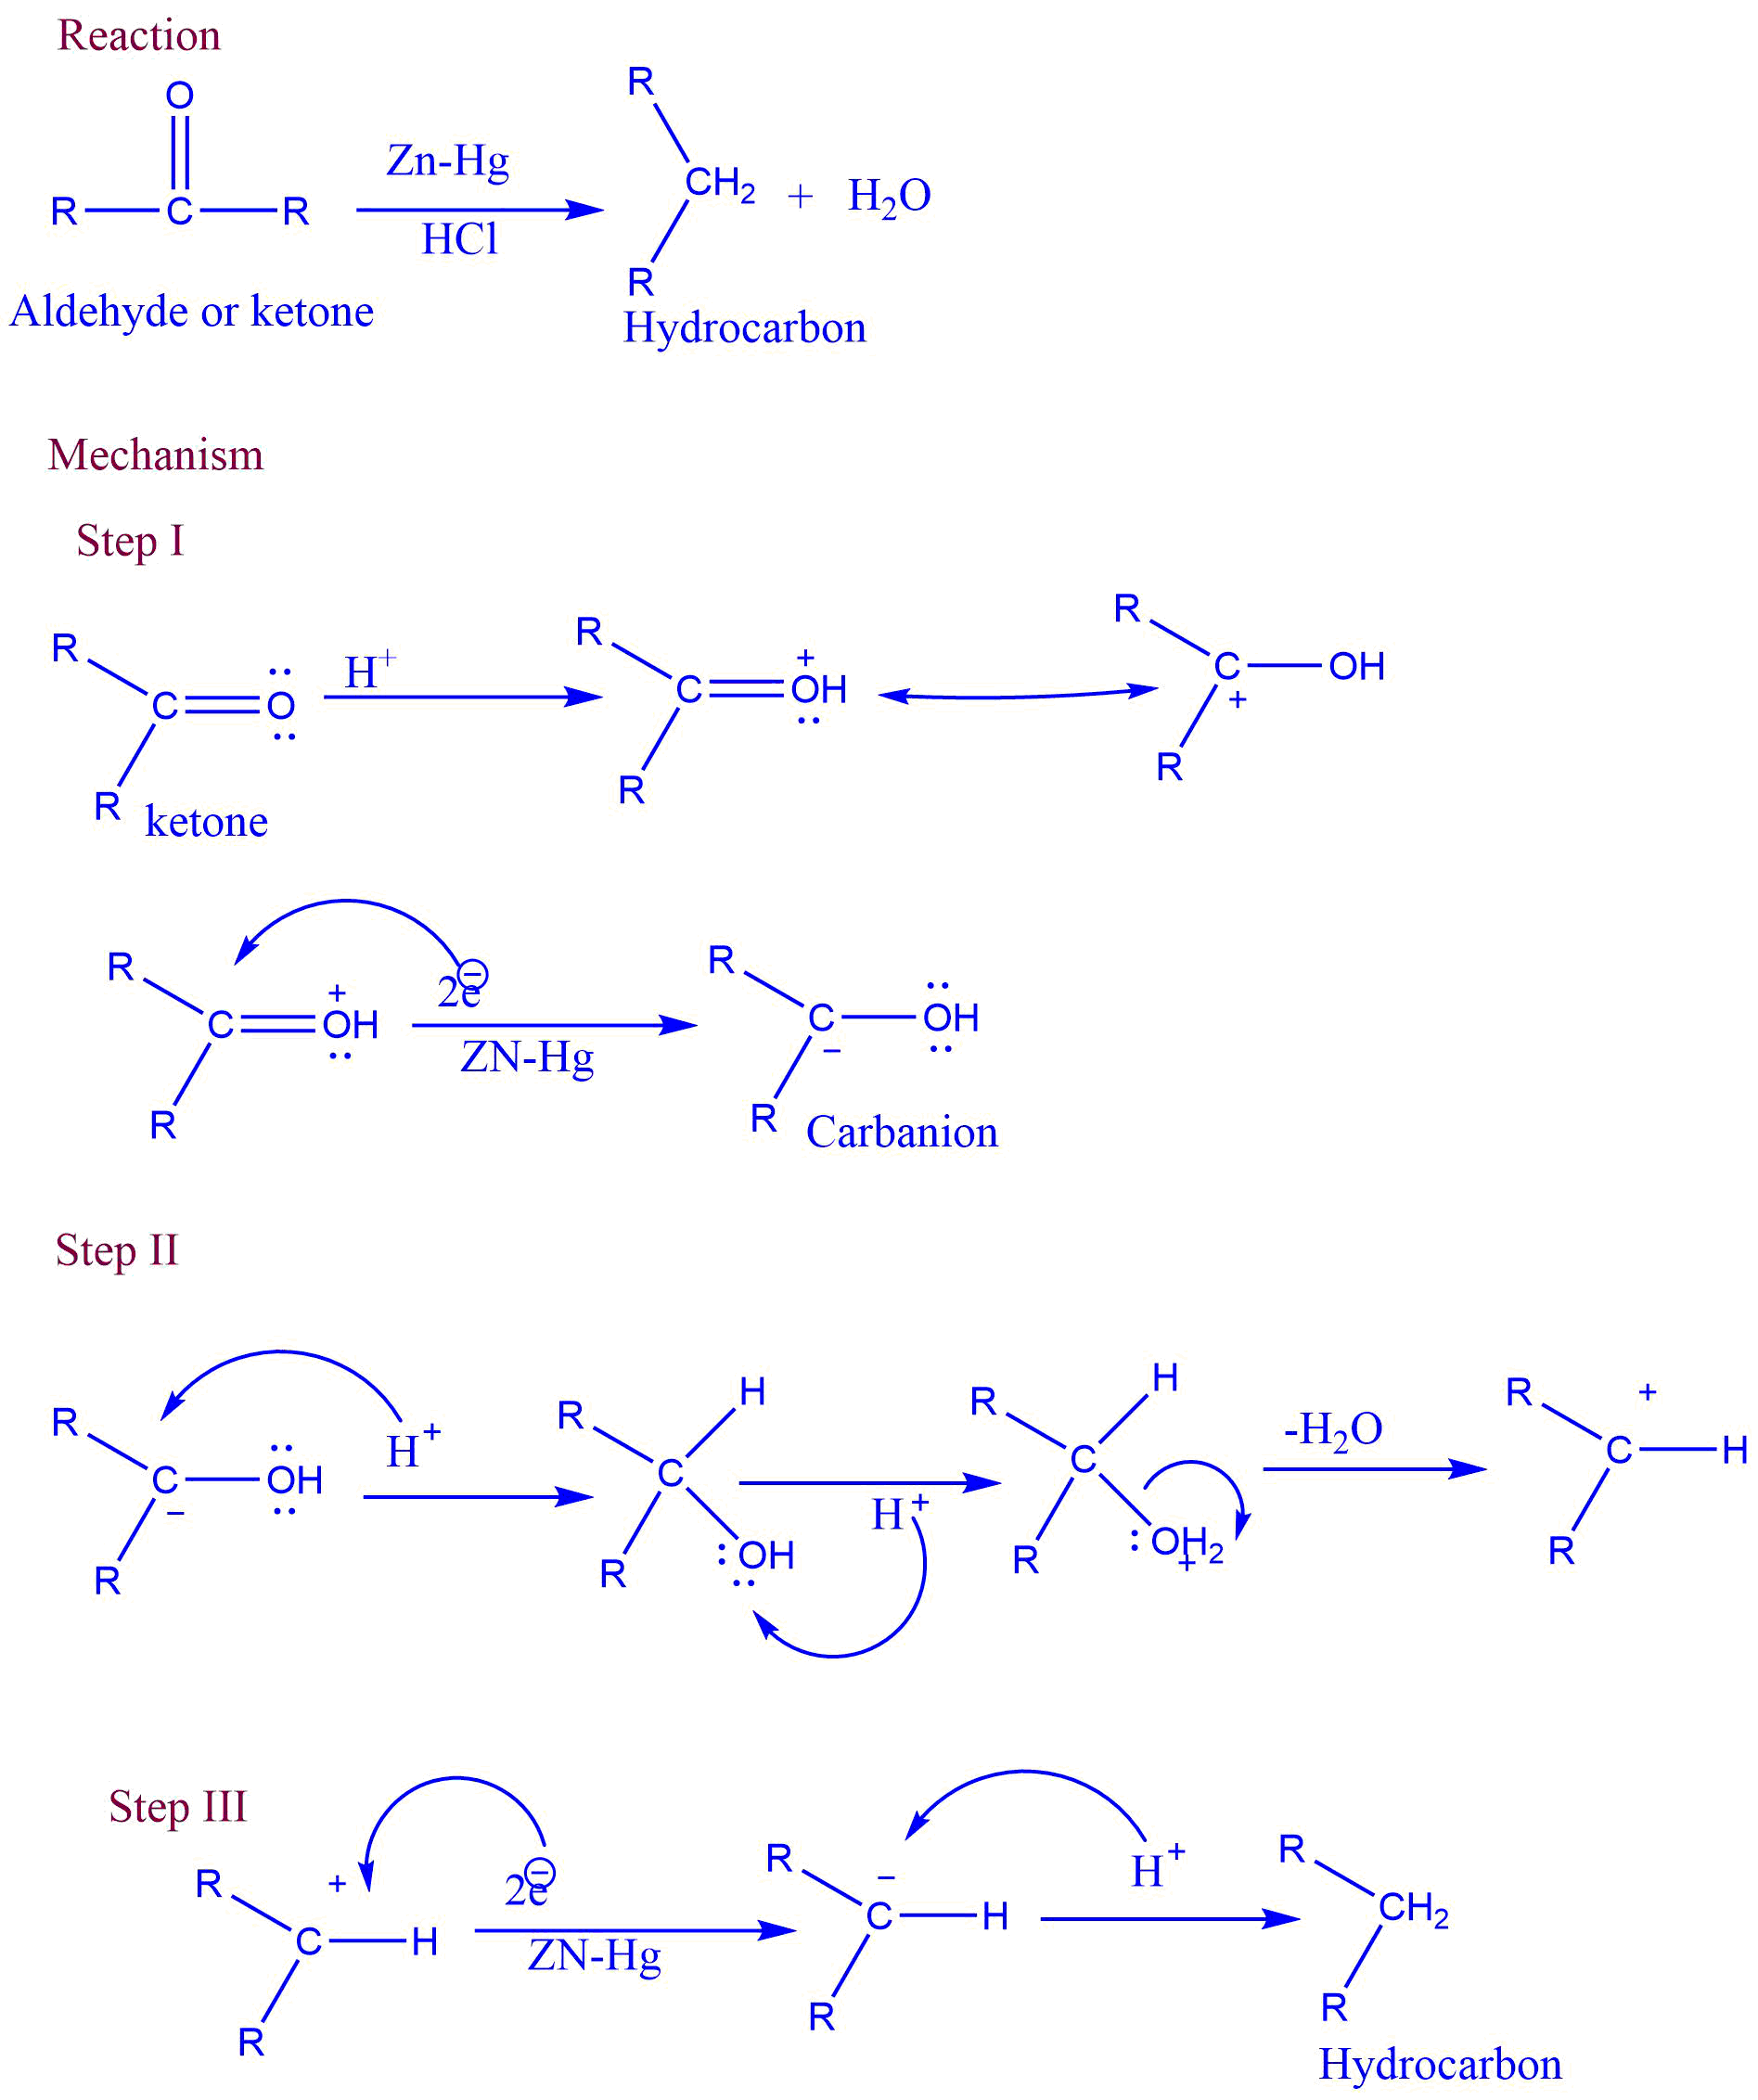 Mechanism of Clemmensen reduction